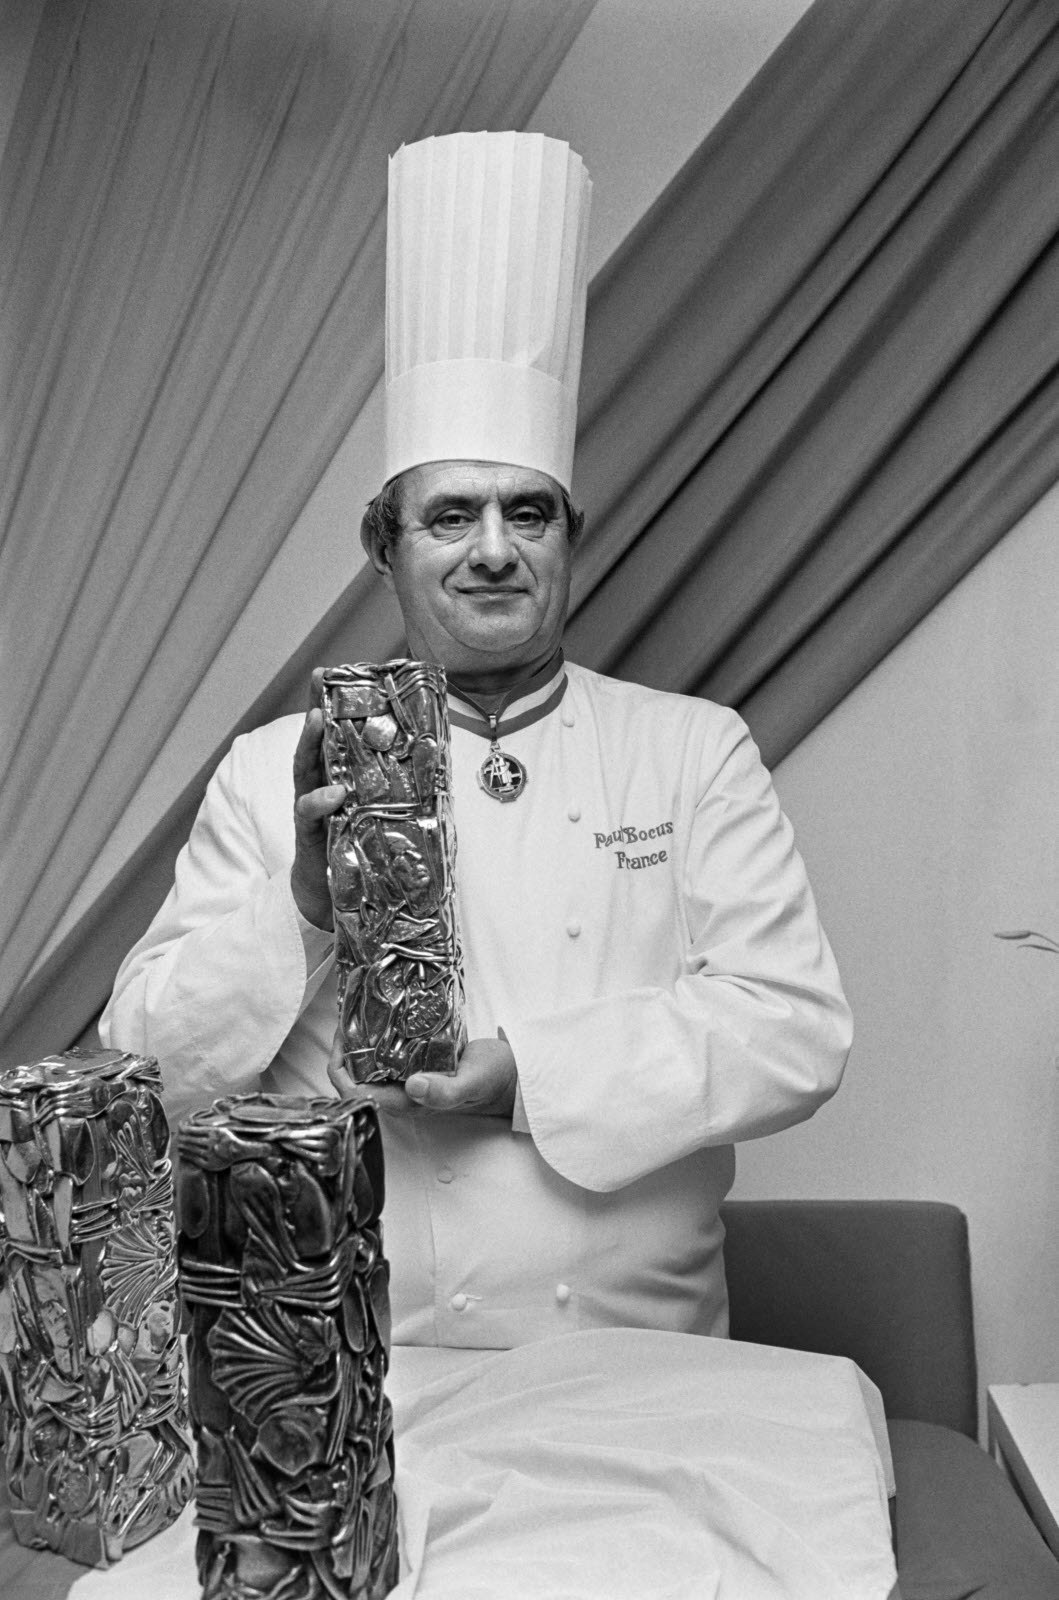 Création et lancement de la première édition du concours international de cuisine Bocuse d'Or en janvier 1987 par Paul Bocuse.